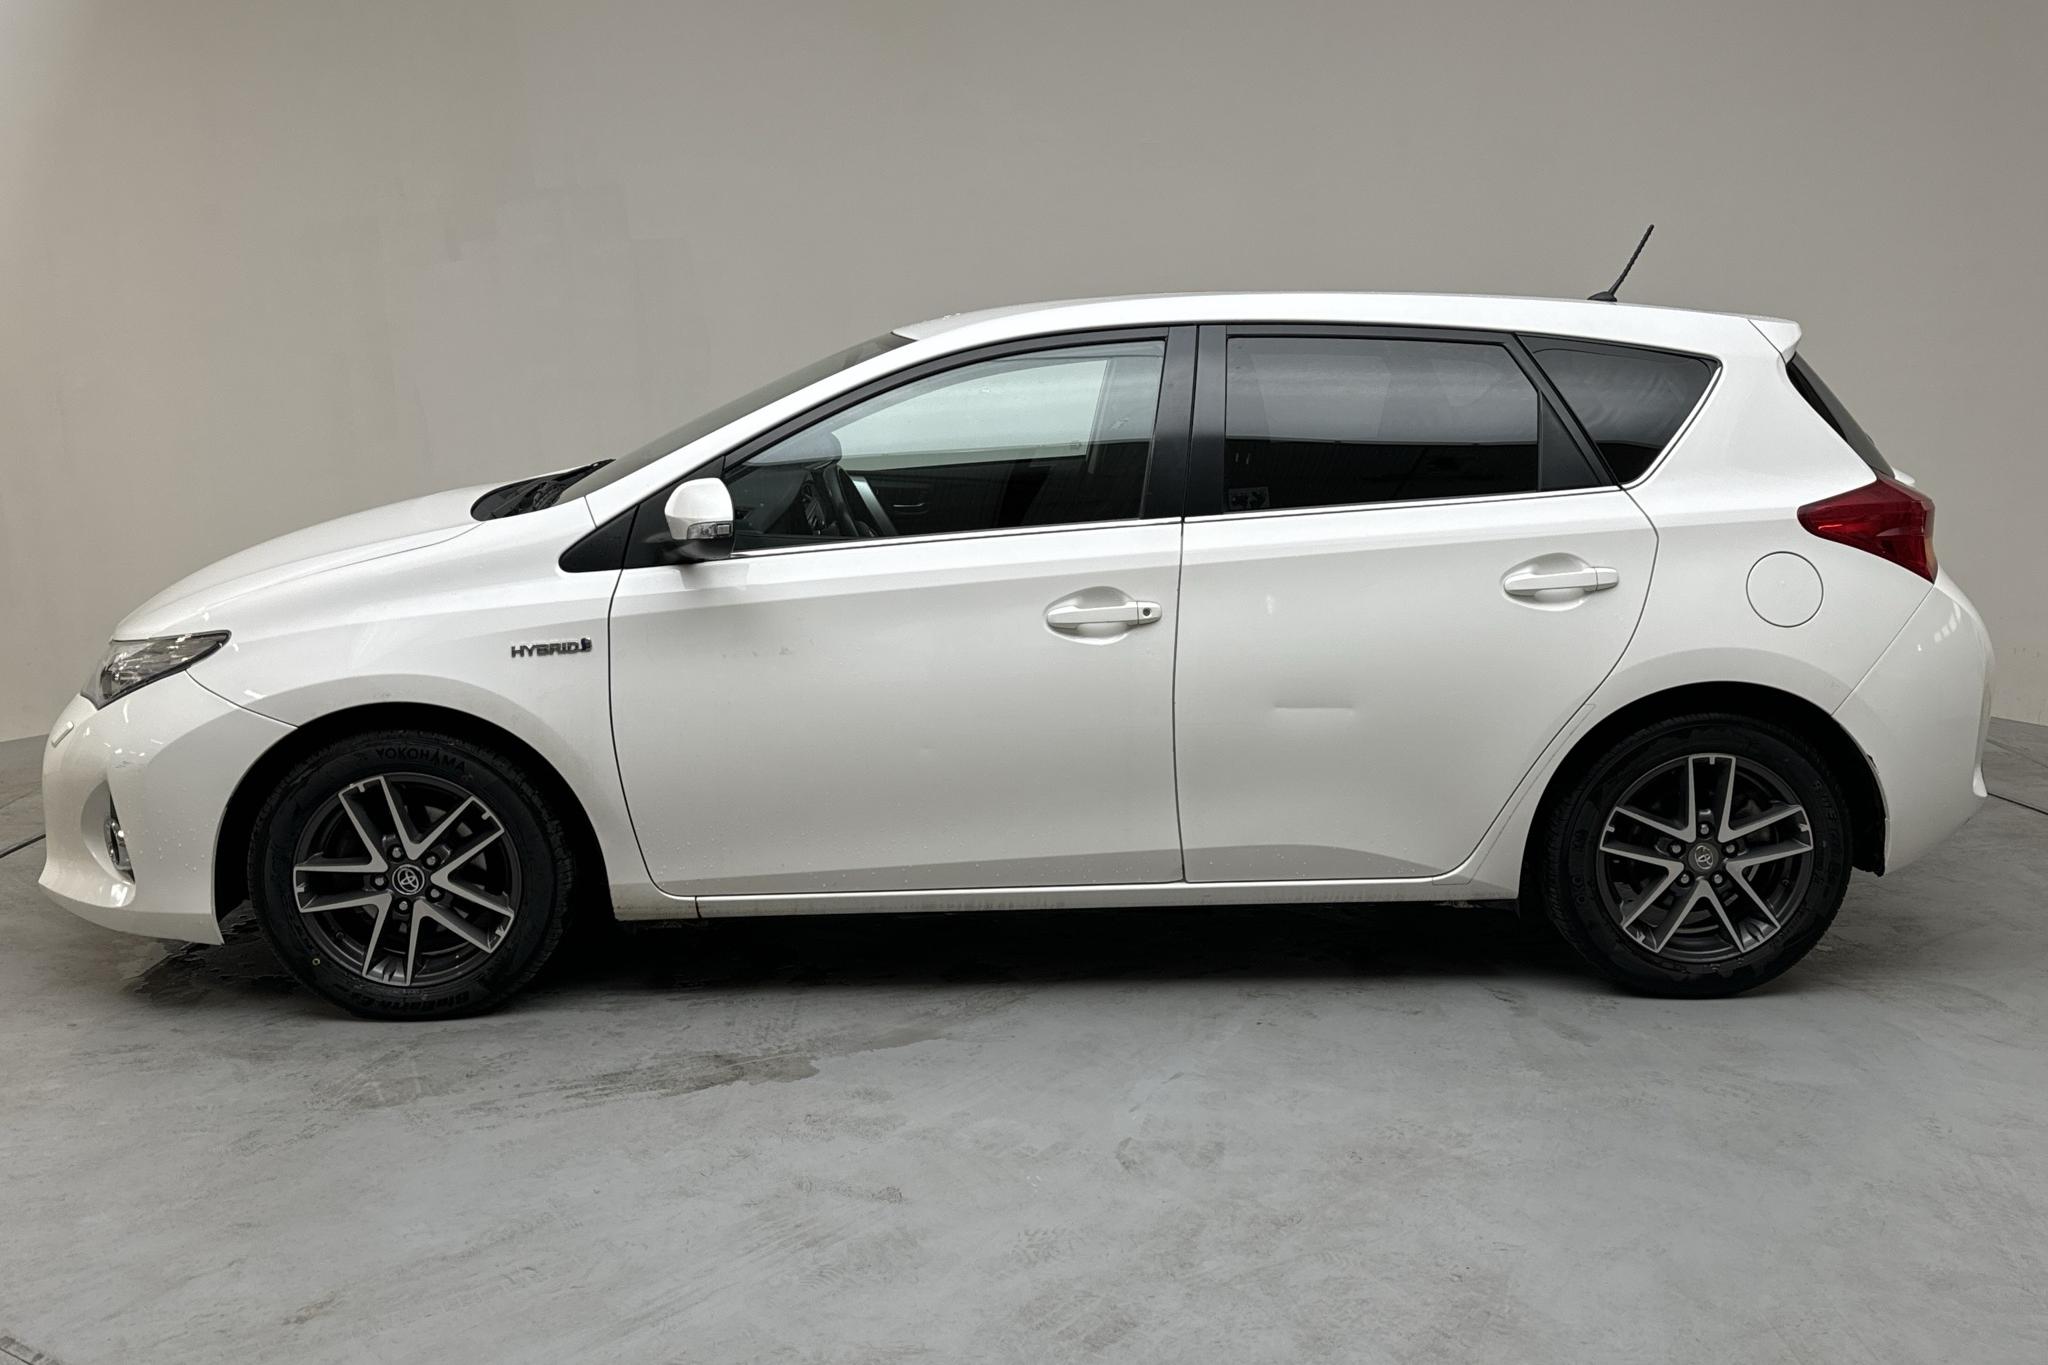 Toyota Auris 1.8 HSD 5dr (99hk) - 178 280 km - Automatyczna - biały - 2015